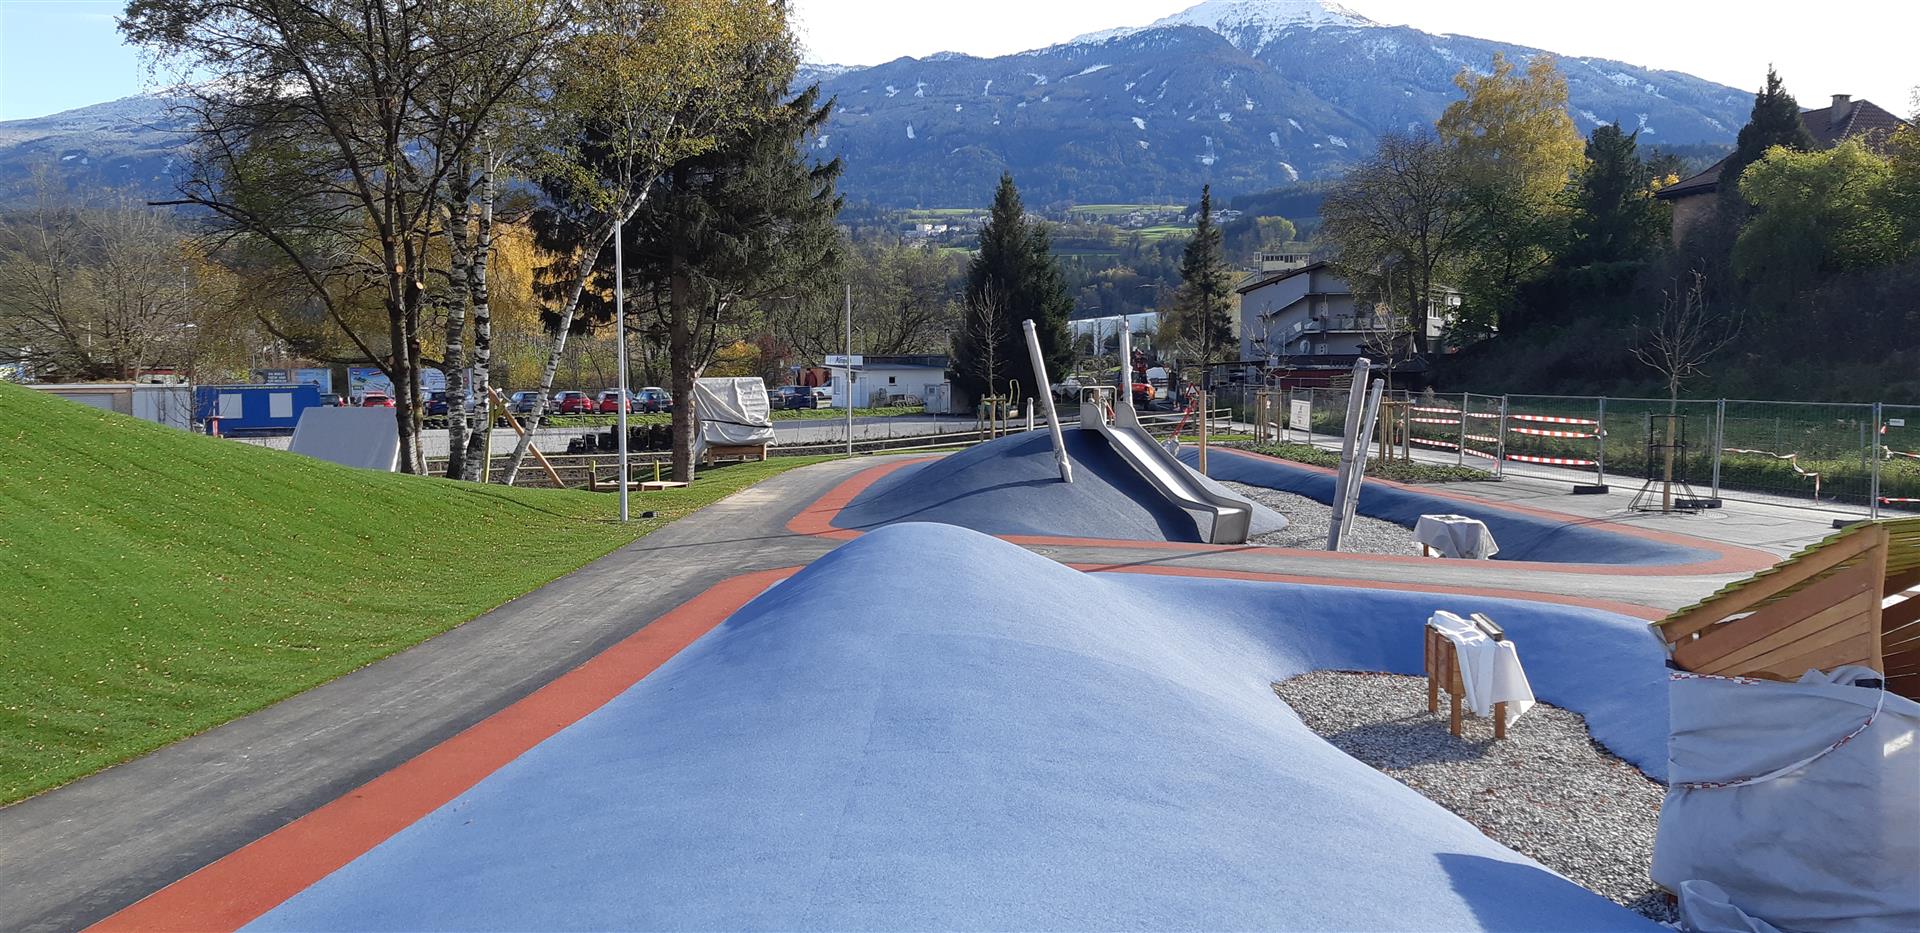 Freizeitpark, Innsbruck - Byggevirksomhed